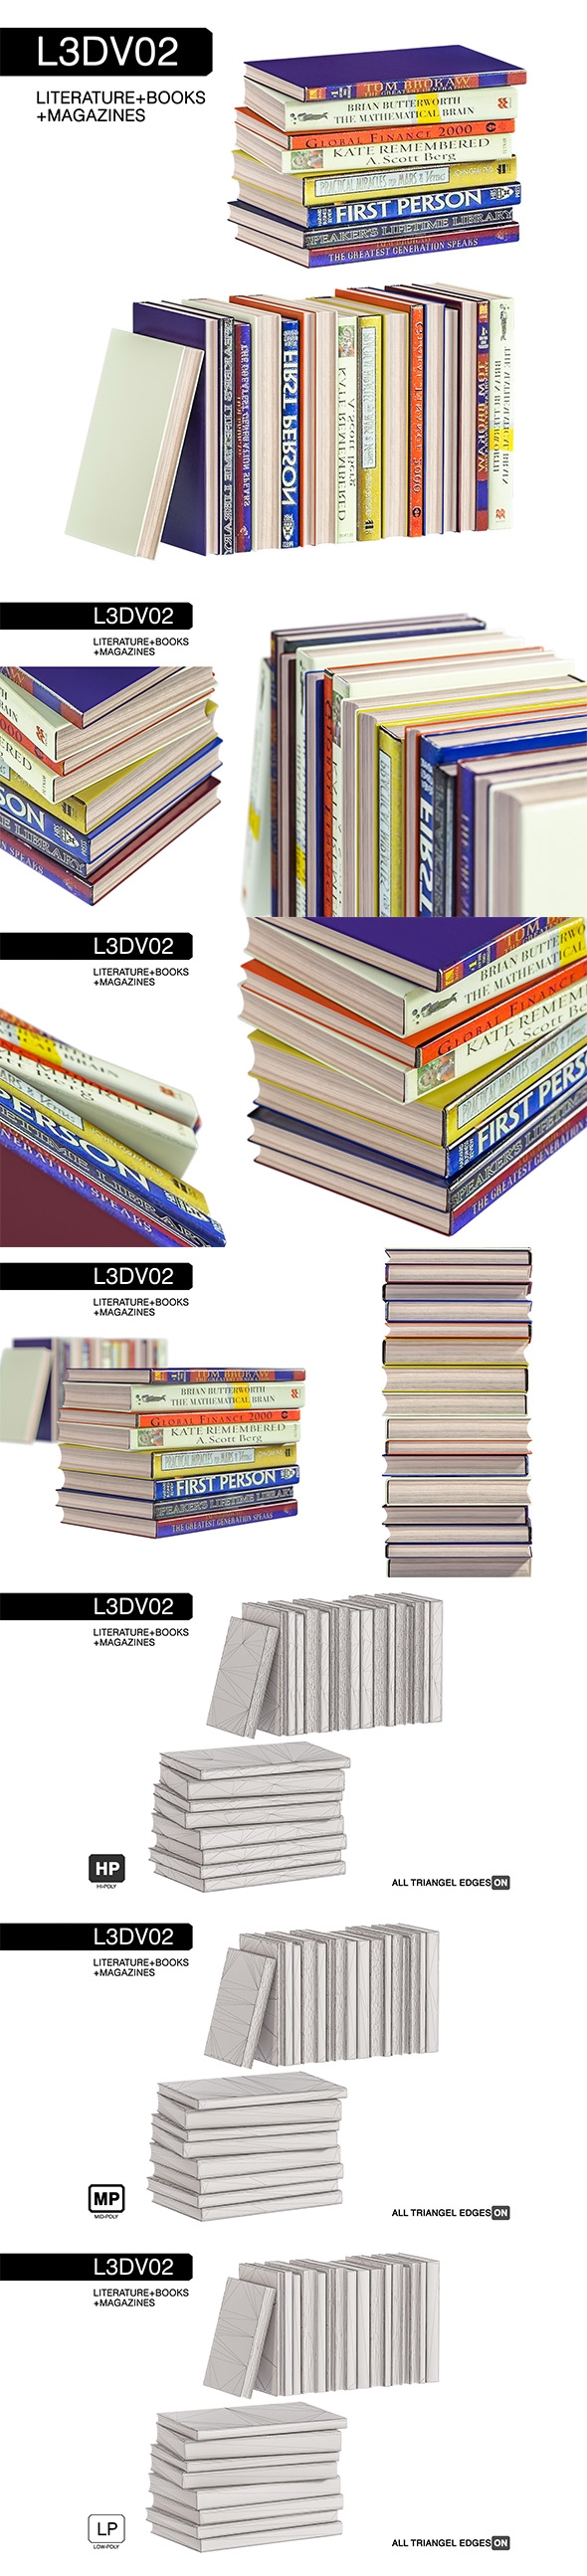 L3DV02G07 - books - 3Docean 24779558